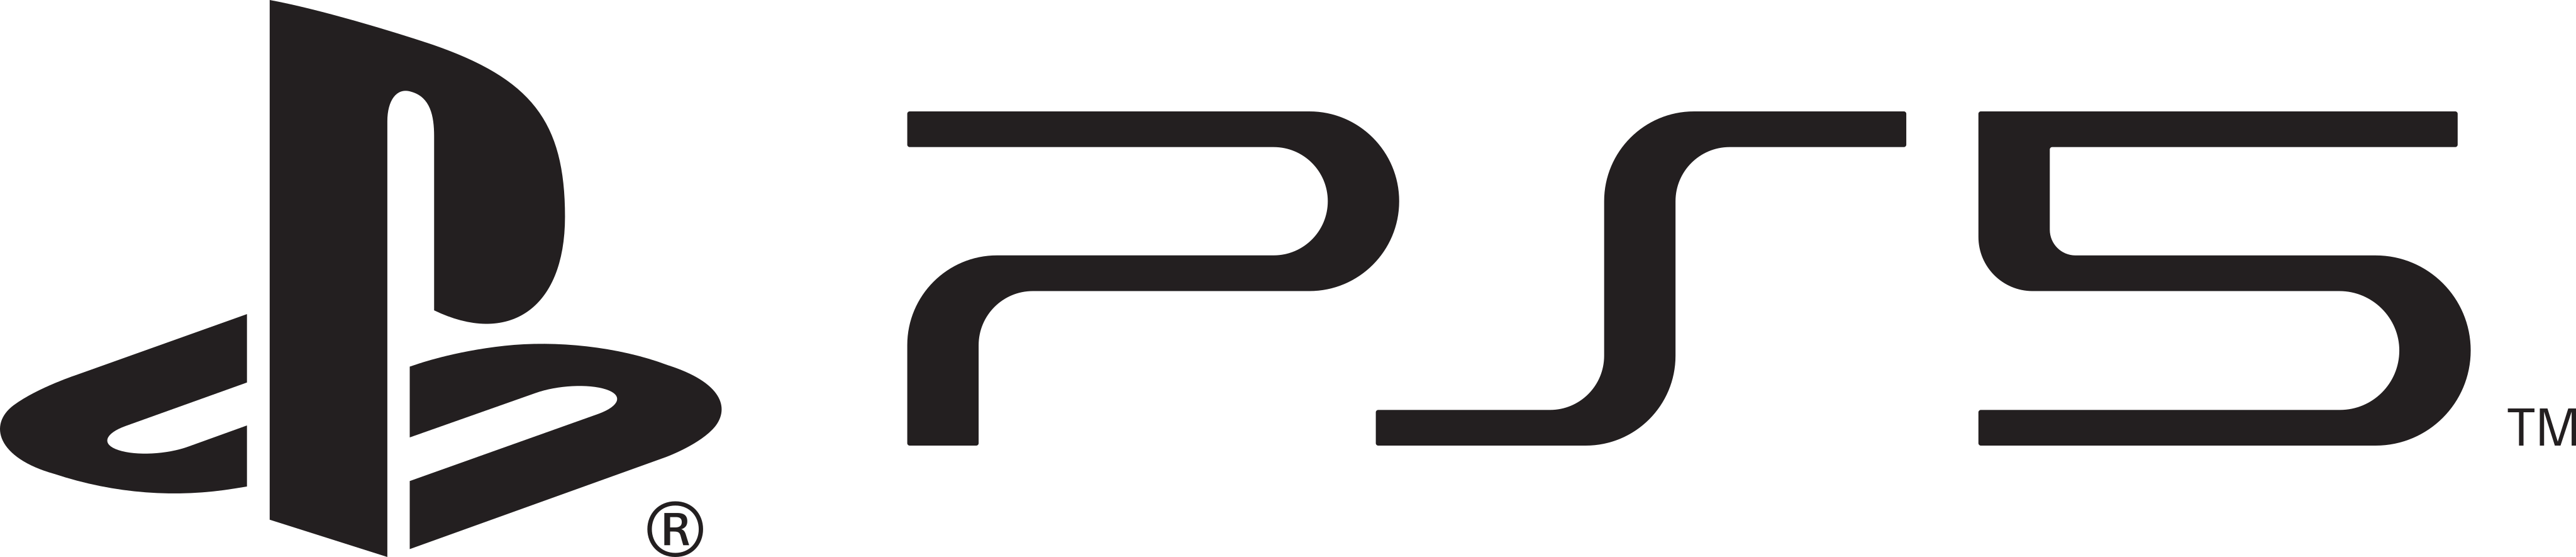 ps5 playstation 5 logo - PS5 Logo - PlayStation 5 Logo